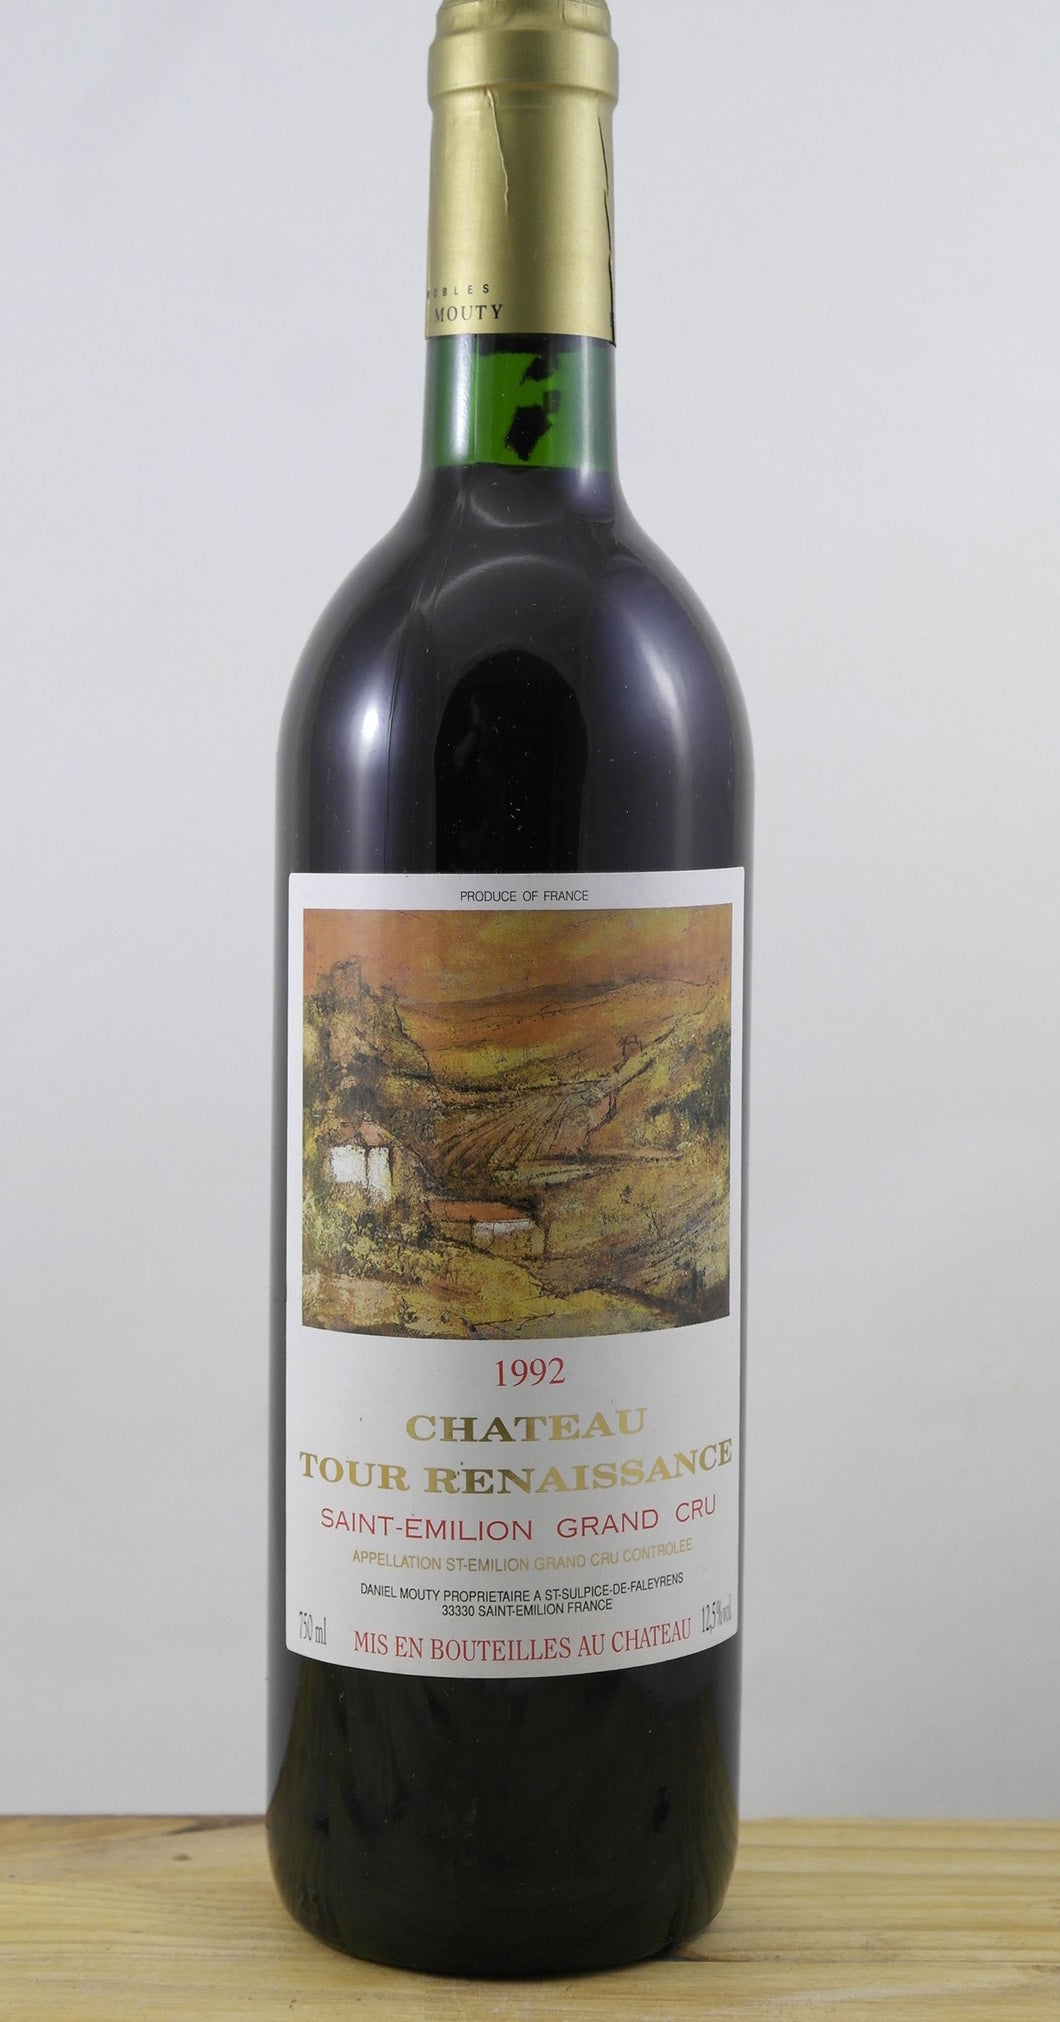 Château Tour Renaissance Vin 1992